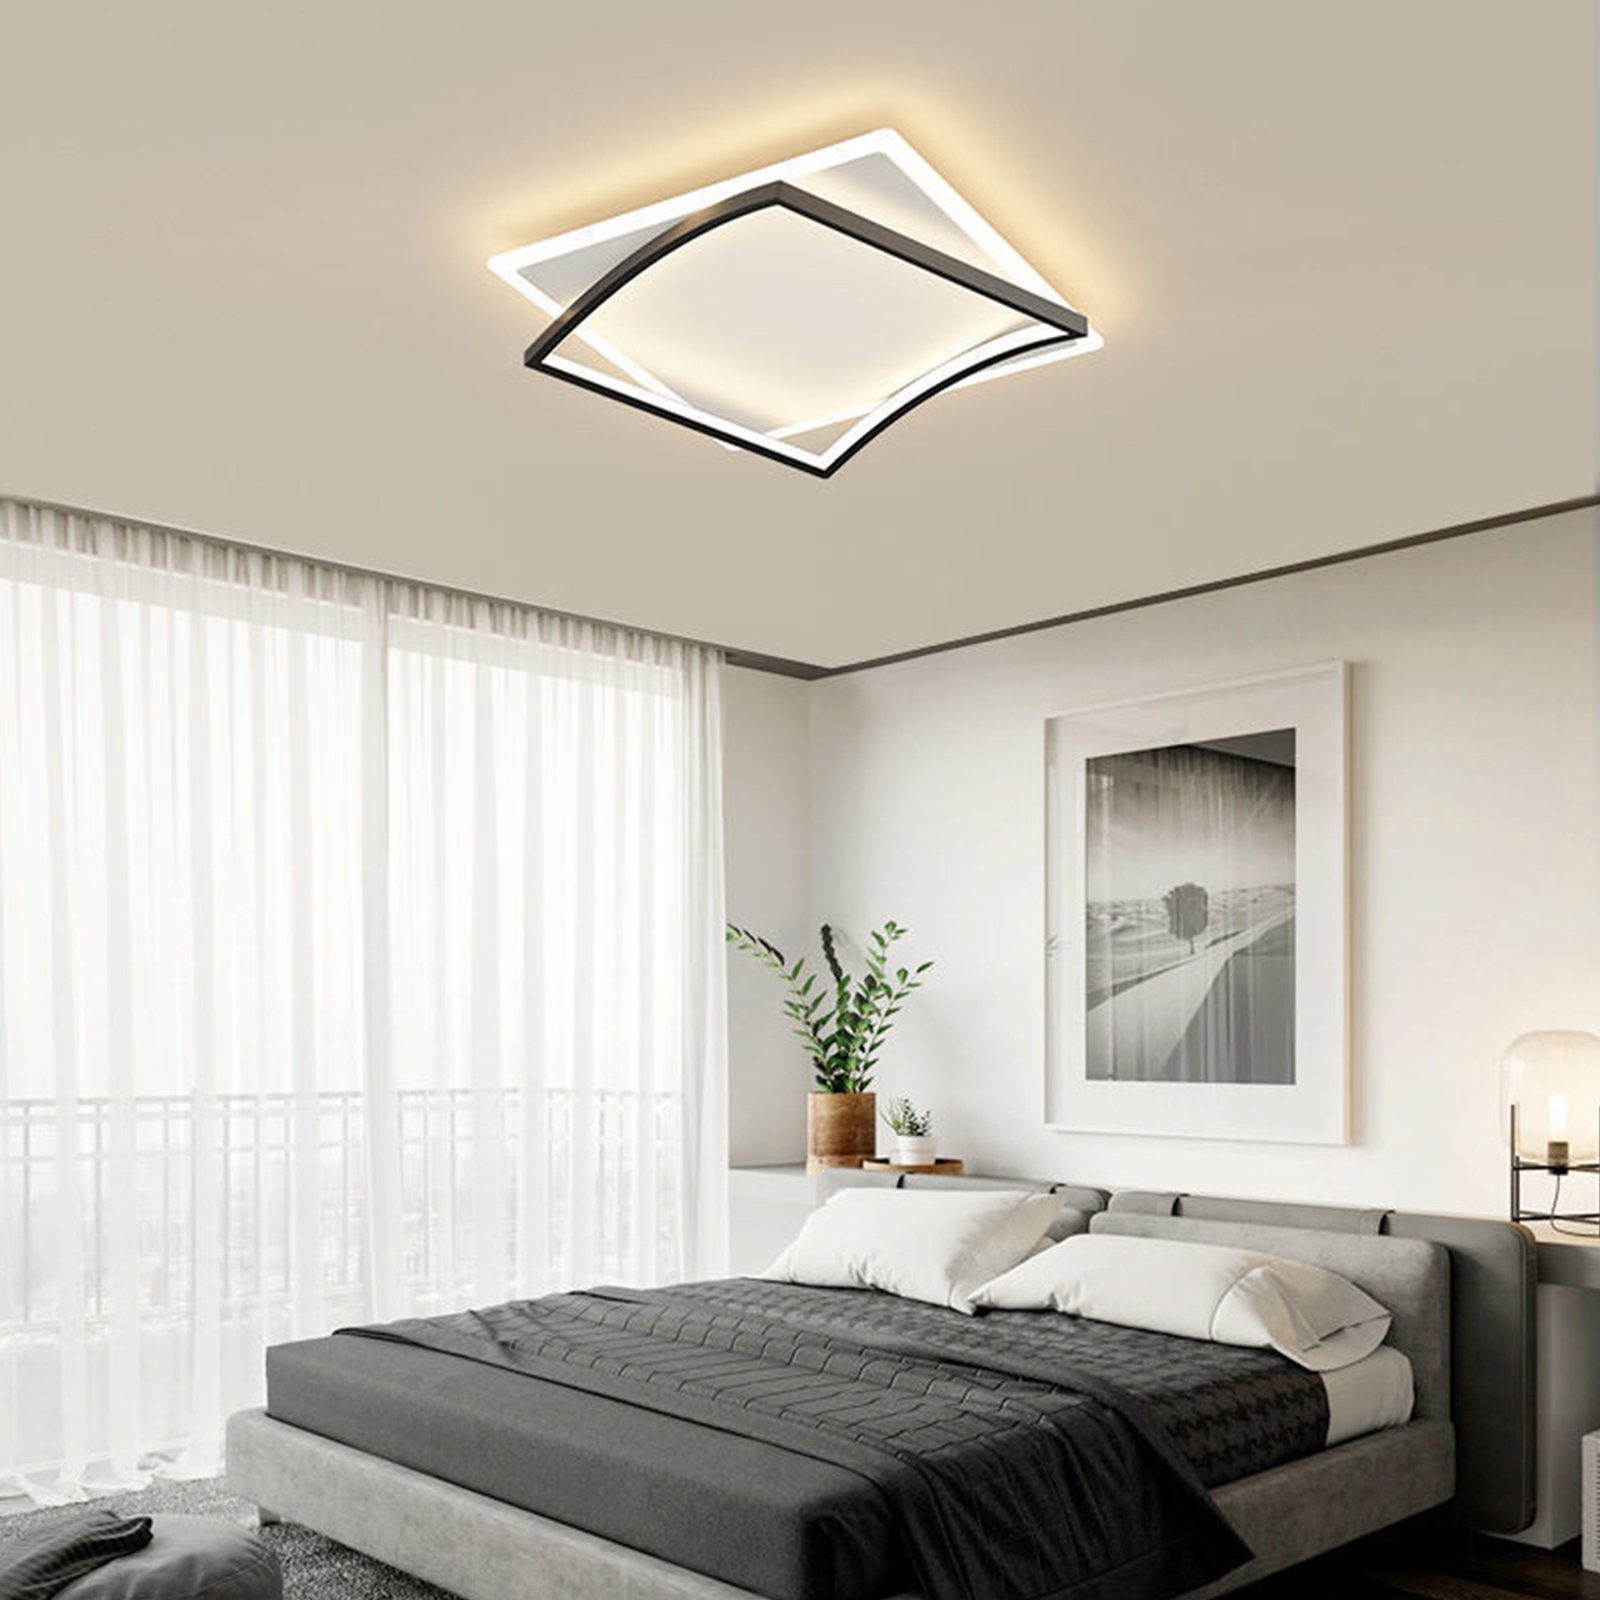 Daskoo Deckenleuchten LED Deckenlampe 50cm Modern Wohnzimmerlampe mit Fernbedienung, LED fest integriert, Warmweiß,Neutralweiß,Kaltweiß, LED Deckenleuchte stufenlos dimmbar